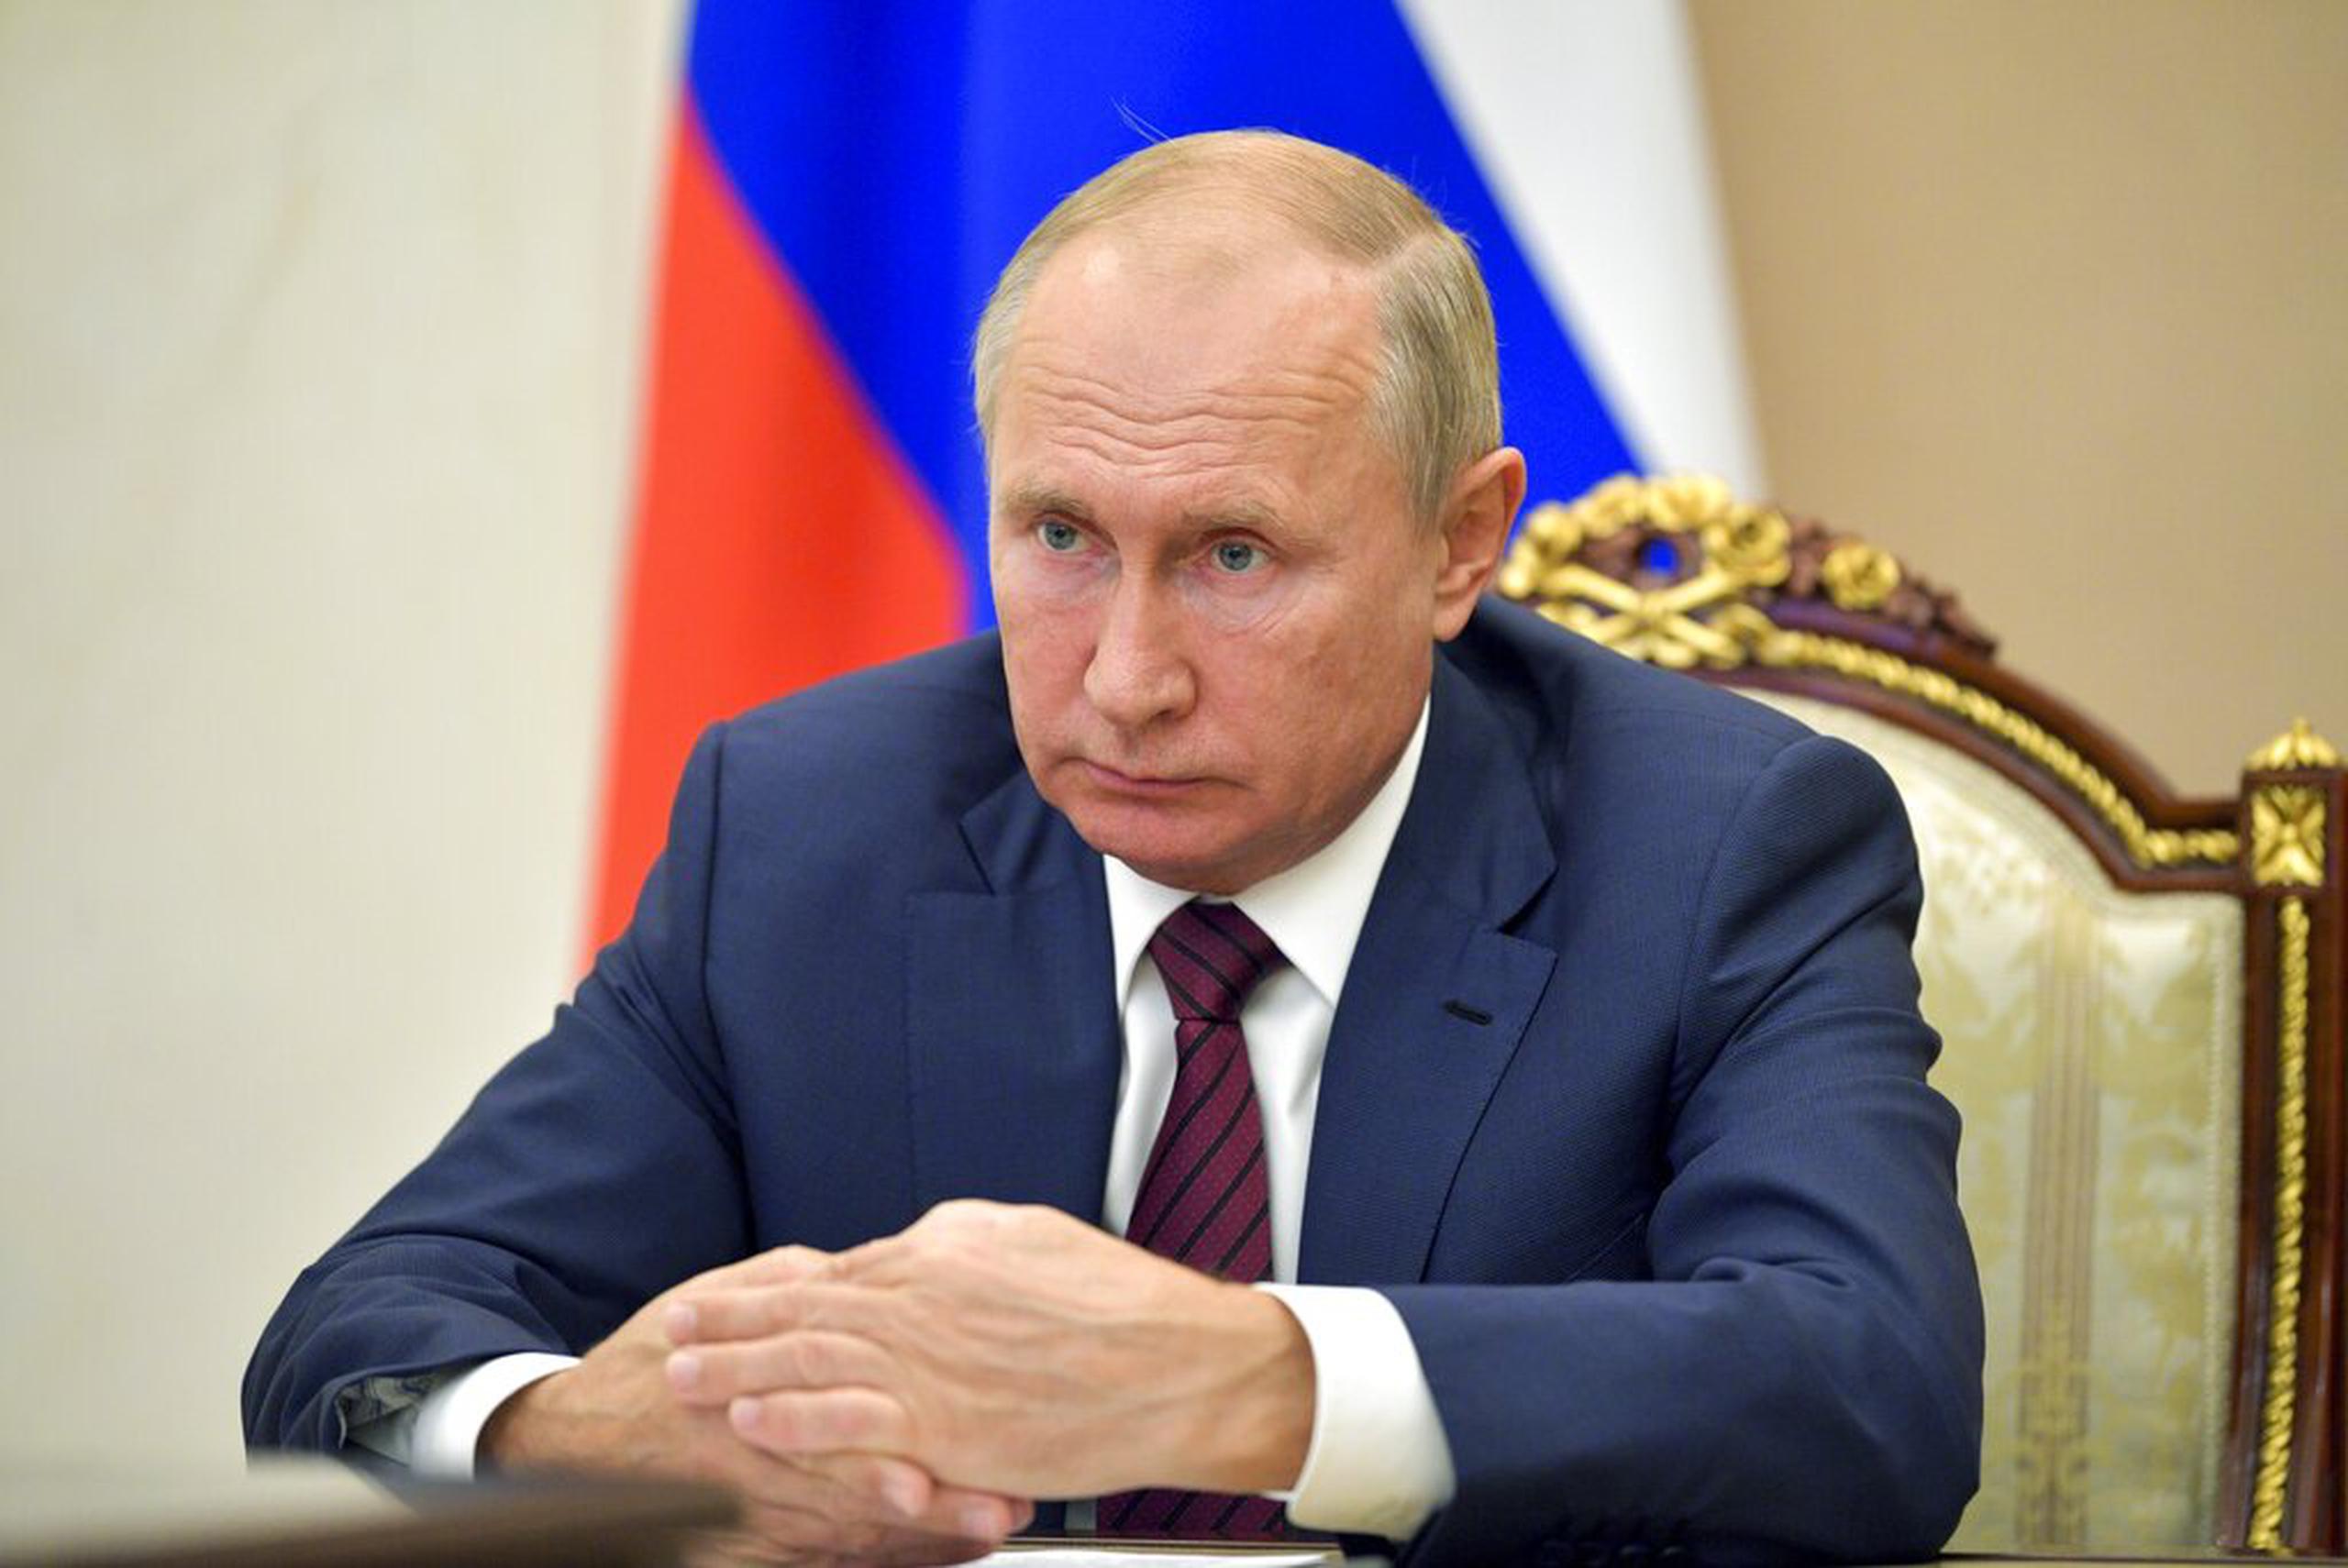 Putin, de 68 años y quien tiene más de décadas en el poder, impulsó una reforma constitucional el año pasado que le permitiría permanecer en el poder hasta 2036.